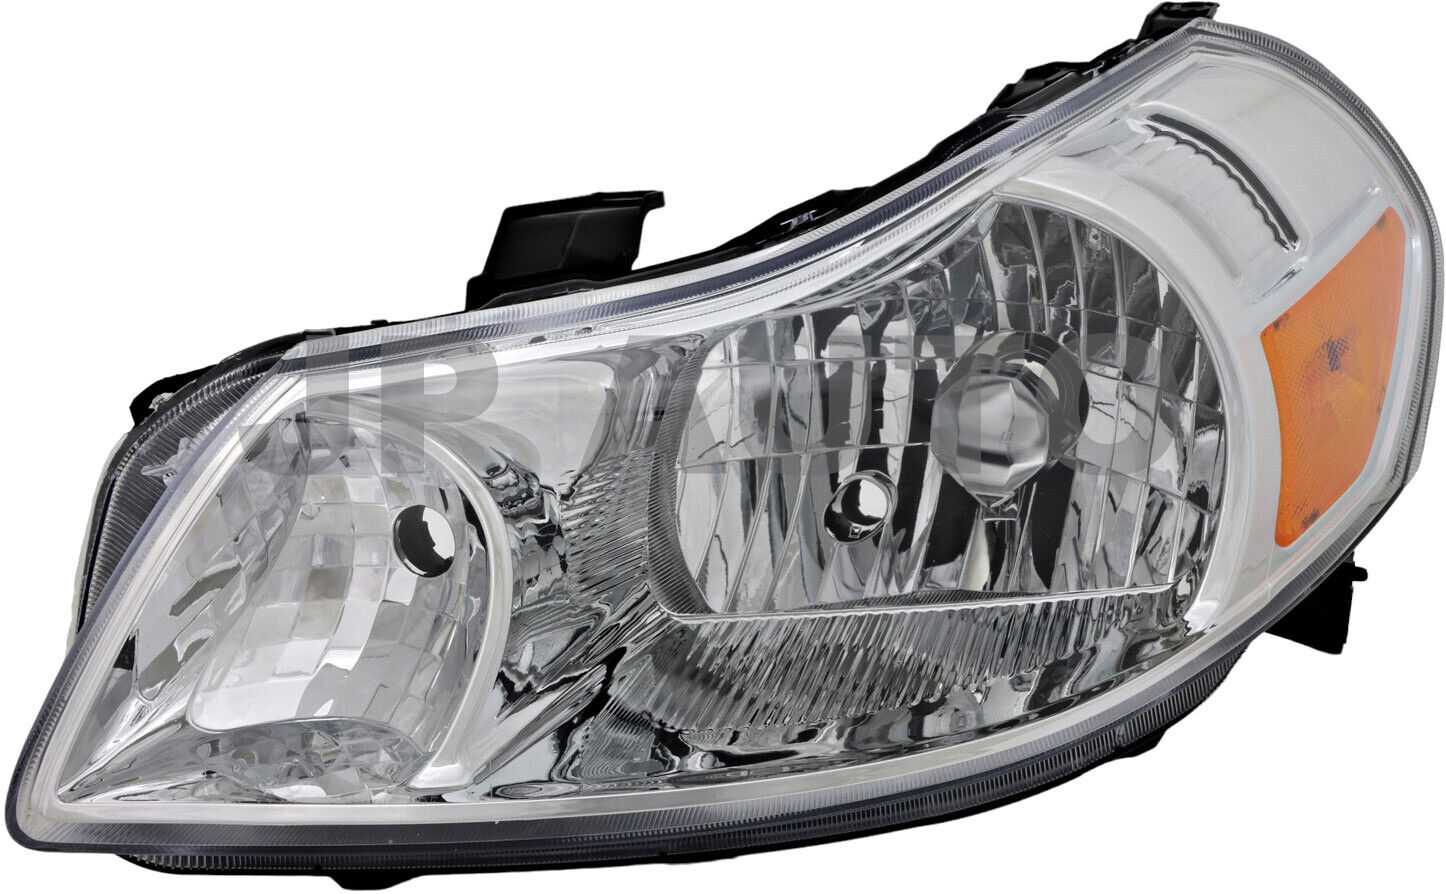 For 2007-2013 Suzuki SX4 Headlight Halogen Driver Side